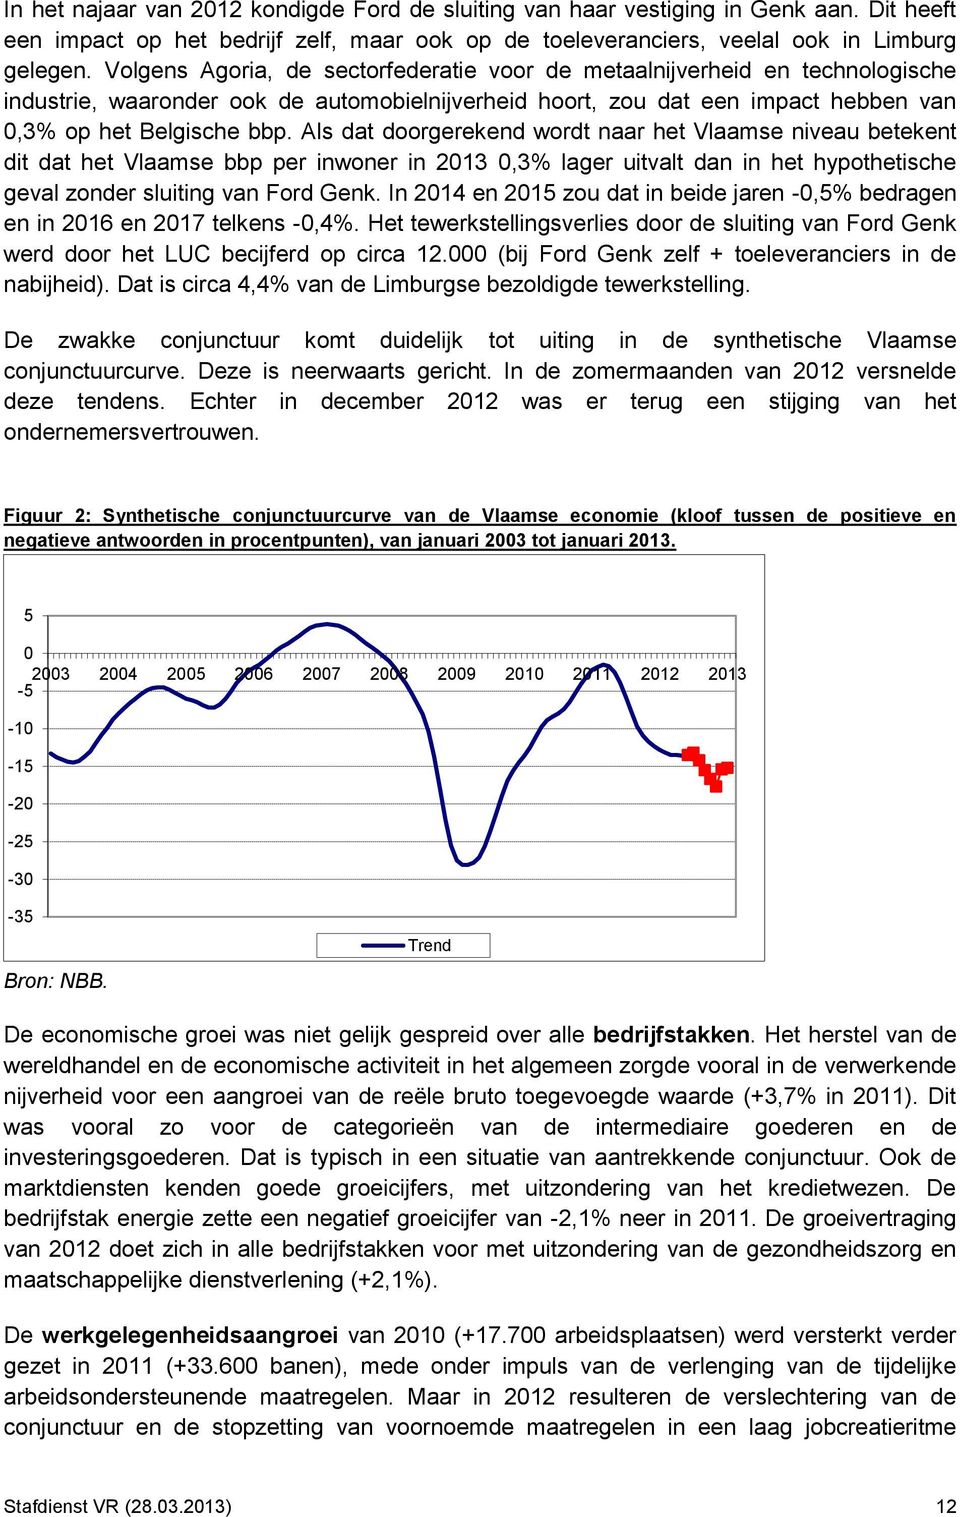 Als dat doorgerekend wordt naar het Vlaamse niveau betekent dit dat het Vlaamse bbp per inwoner in 2013 0,3% lager uitvalt dan in het hypothetische geval zonder sluiting van Ford Genk.